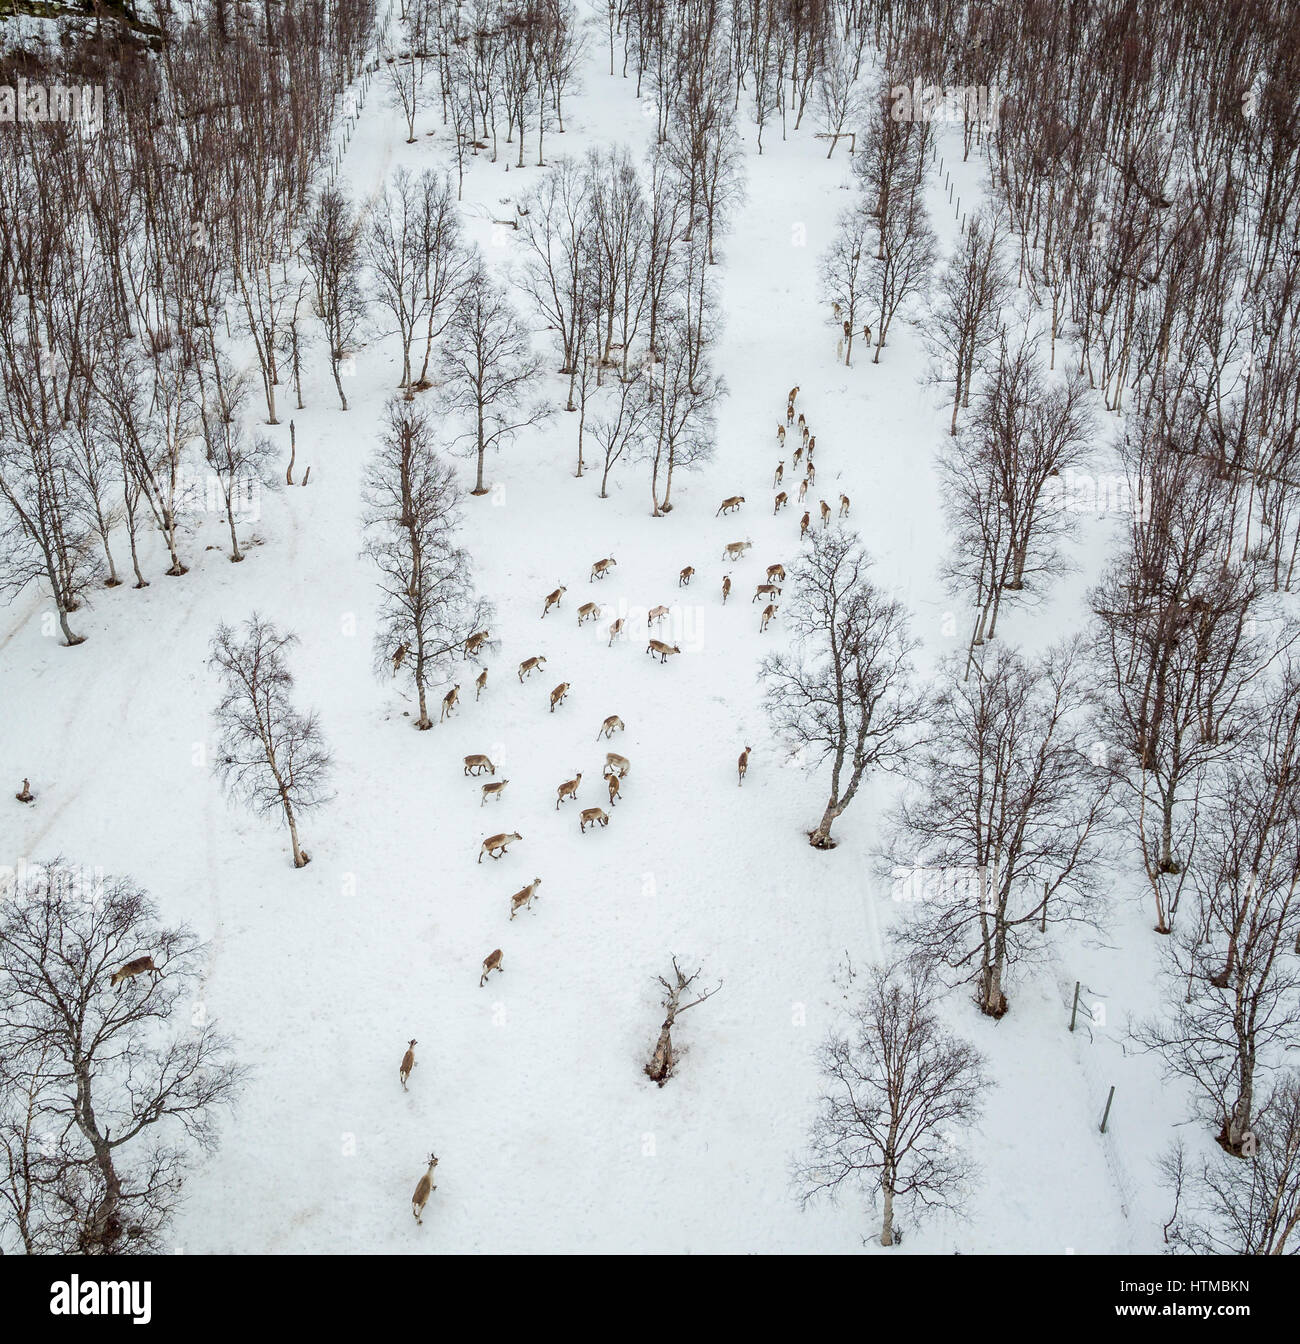 Reindeer herding, Laponian Area, Stora Sjofallet National Park, Lapland, Sweden. World heritiage Area. Stock Photo